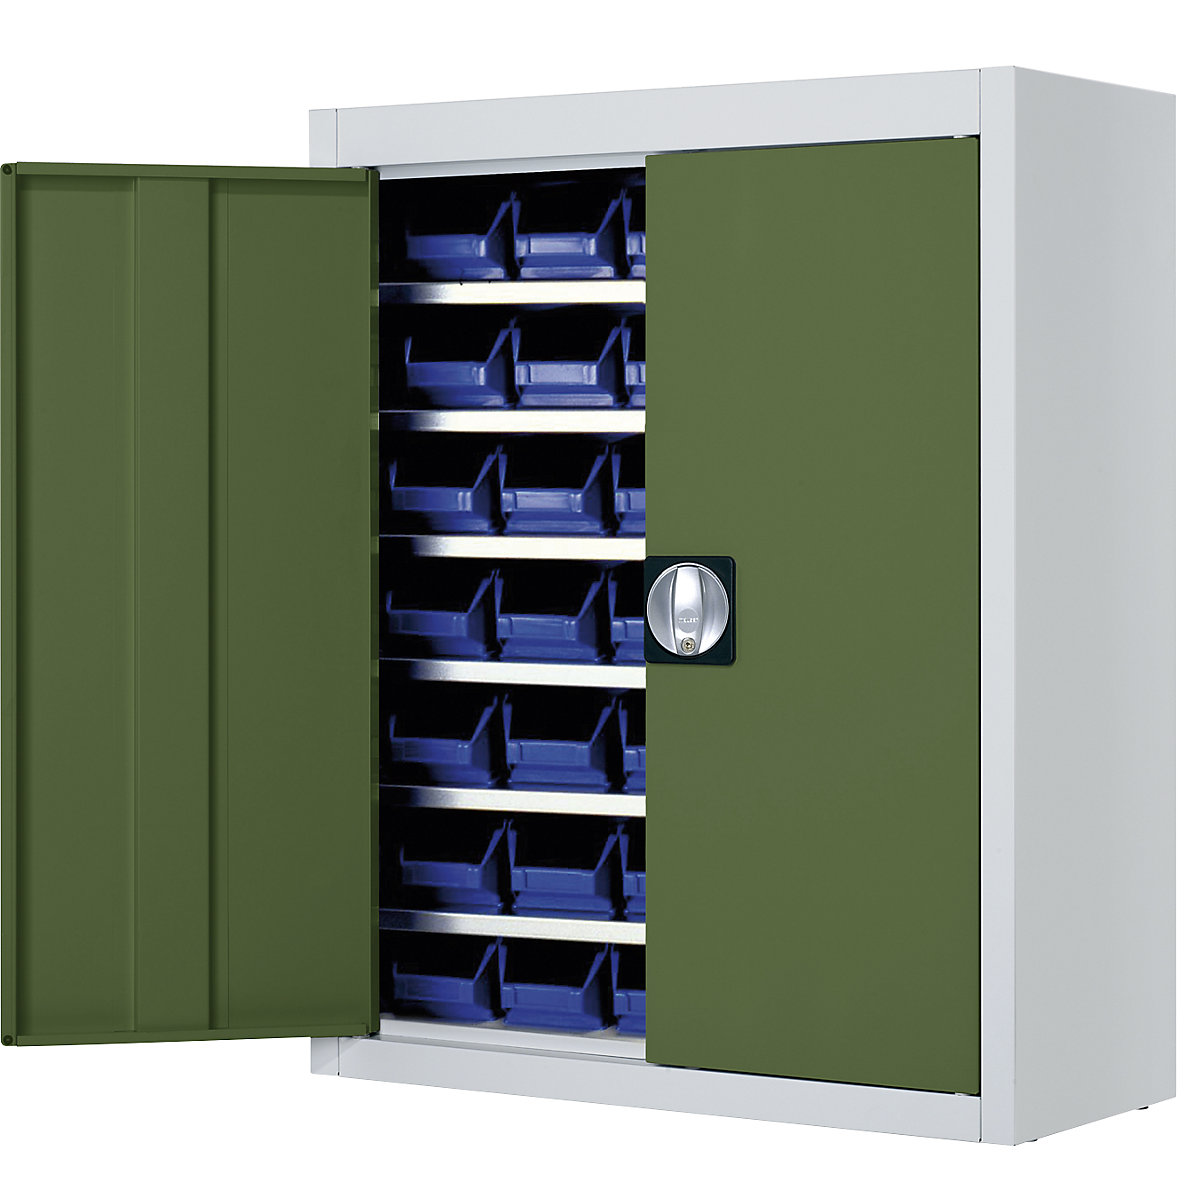 Skladišni ormar s otvorenim skladišnim kutijama – mauser, VxŠxD 820 x 680 x 280 mm, u dvije boje, korpus u sivoj boji, vrata u zelenoj boji, 42 kutije, od 3 kom.-6